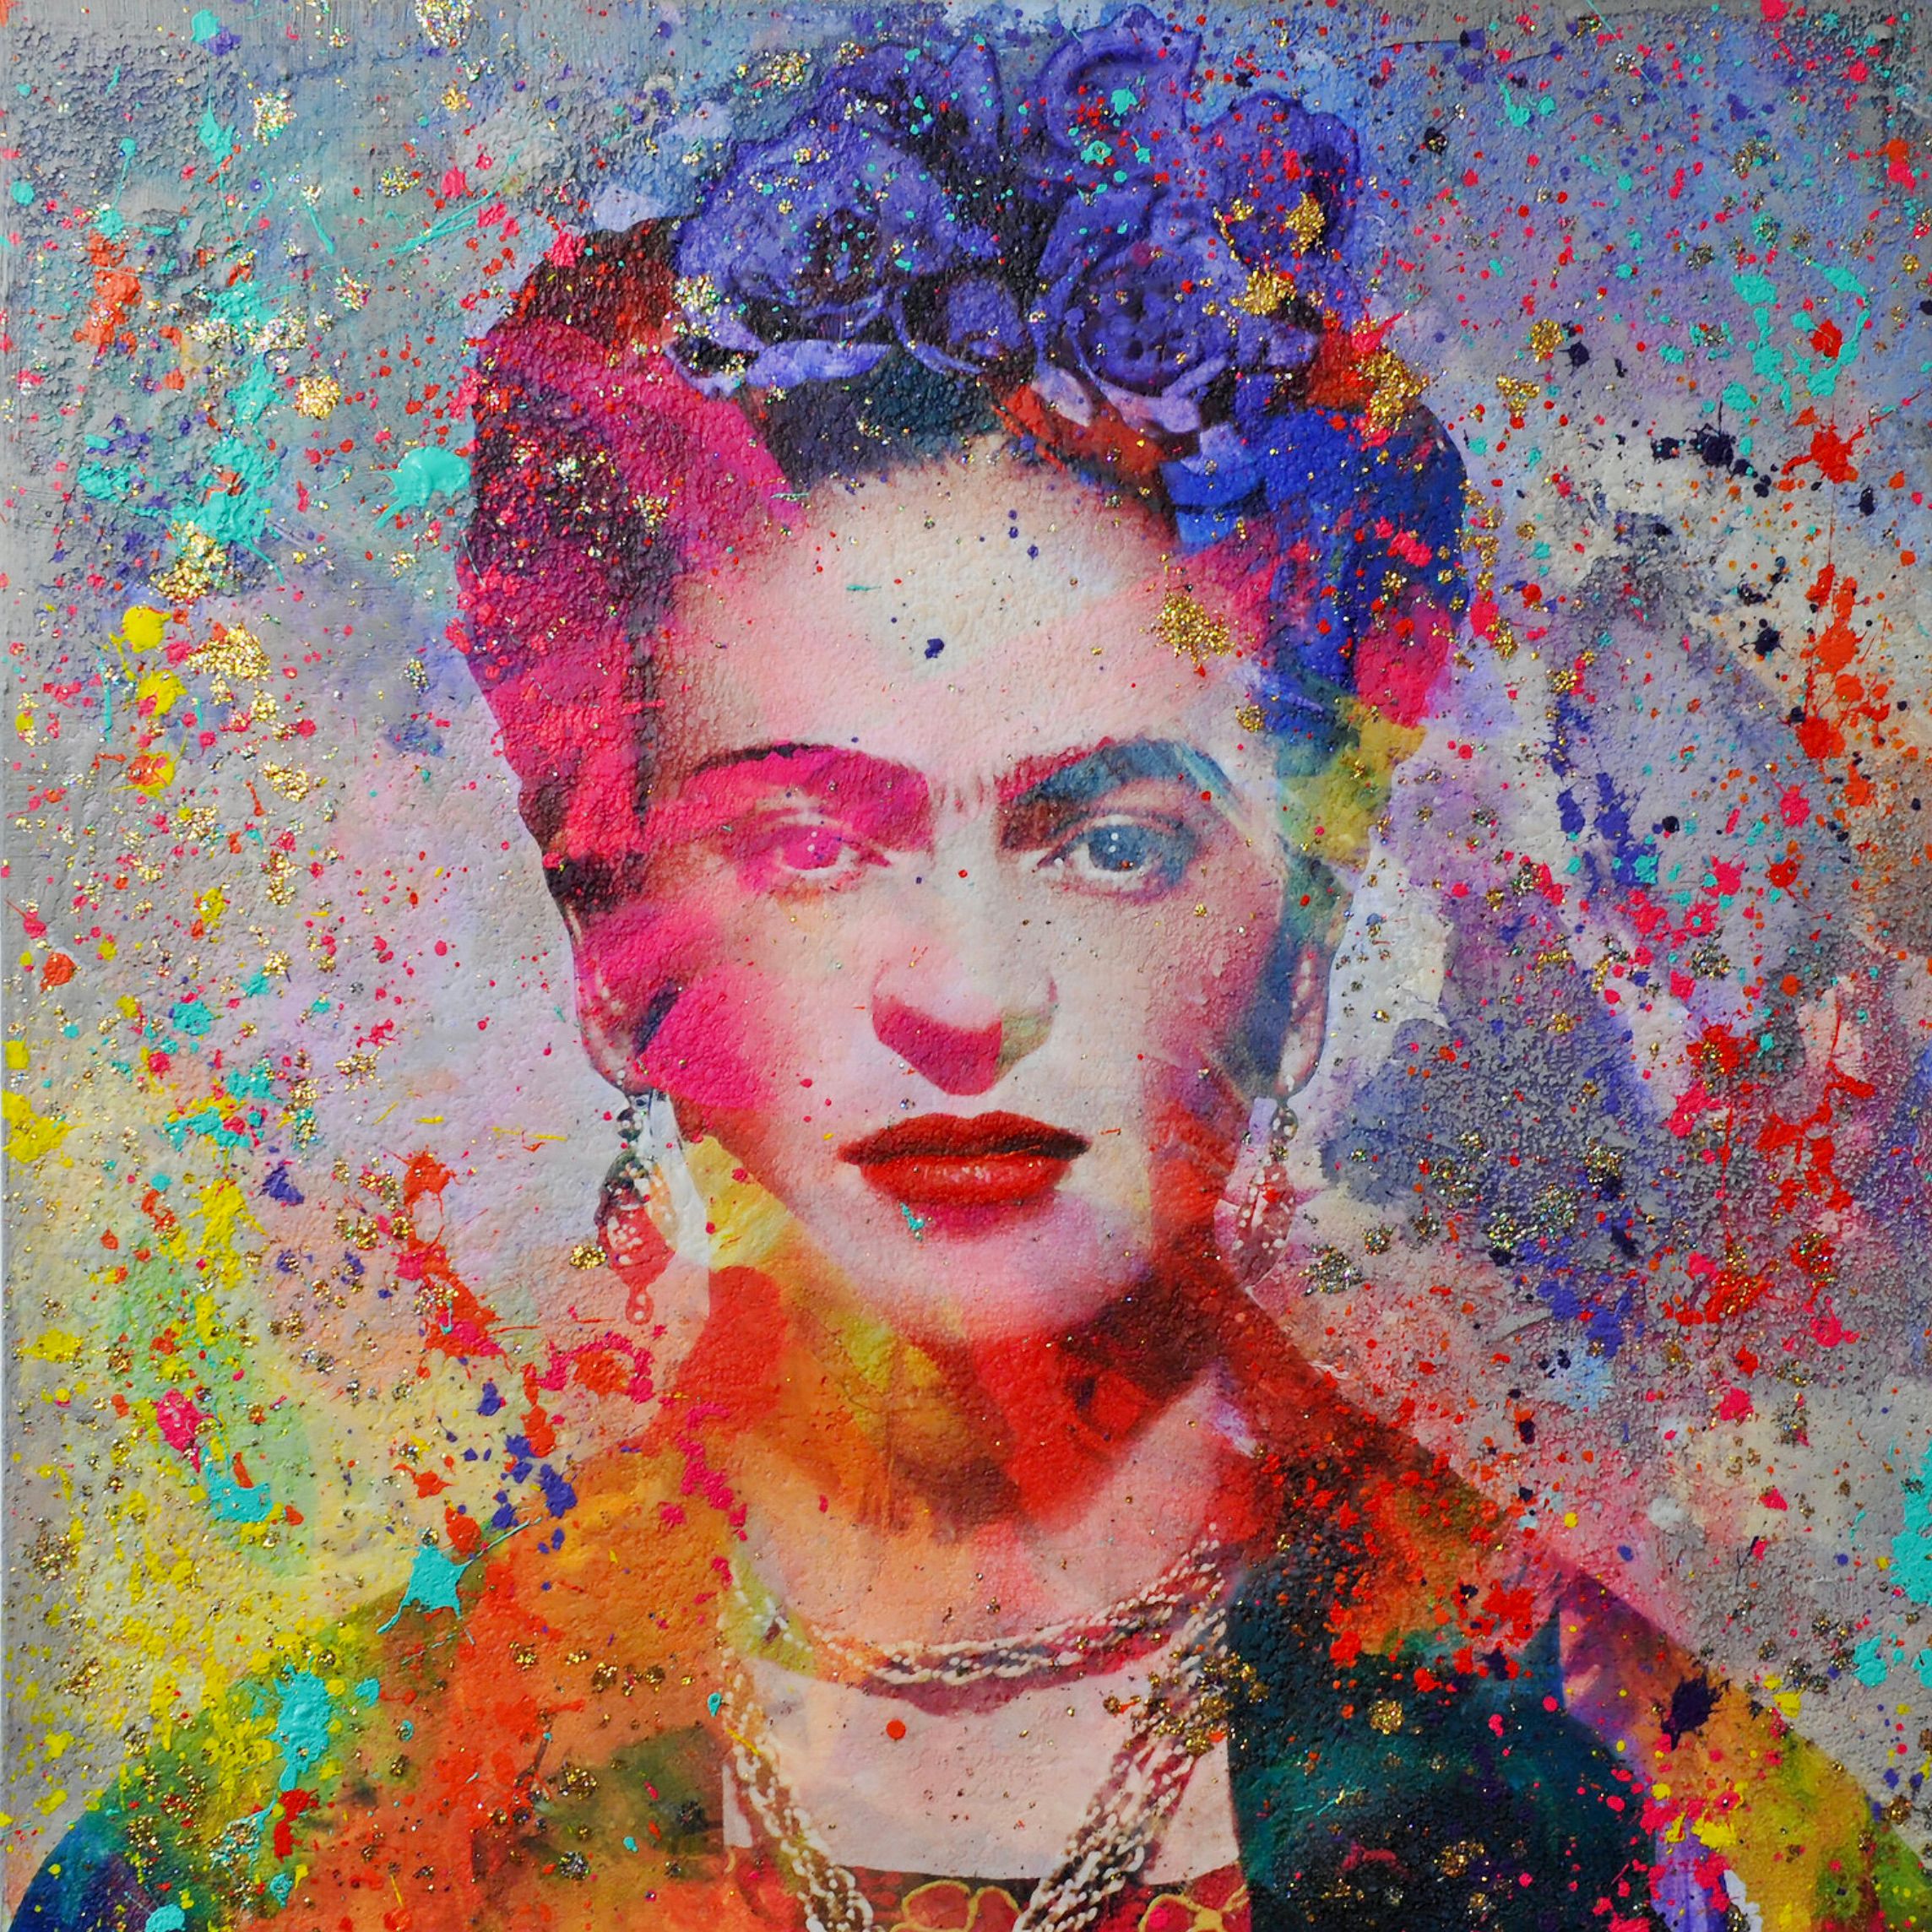 Karin Vermeer's "Frida Kahlo" ist eine digitale Kombination und Bearbeitung von Fotografien, Gemälden und Collage zu neuen, originellen Kunstwerken in Farbe.